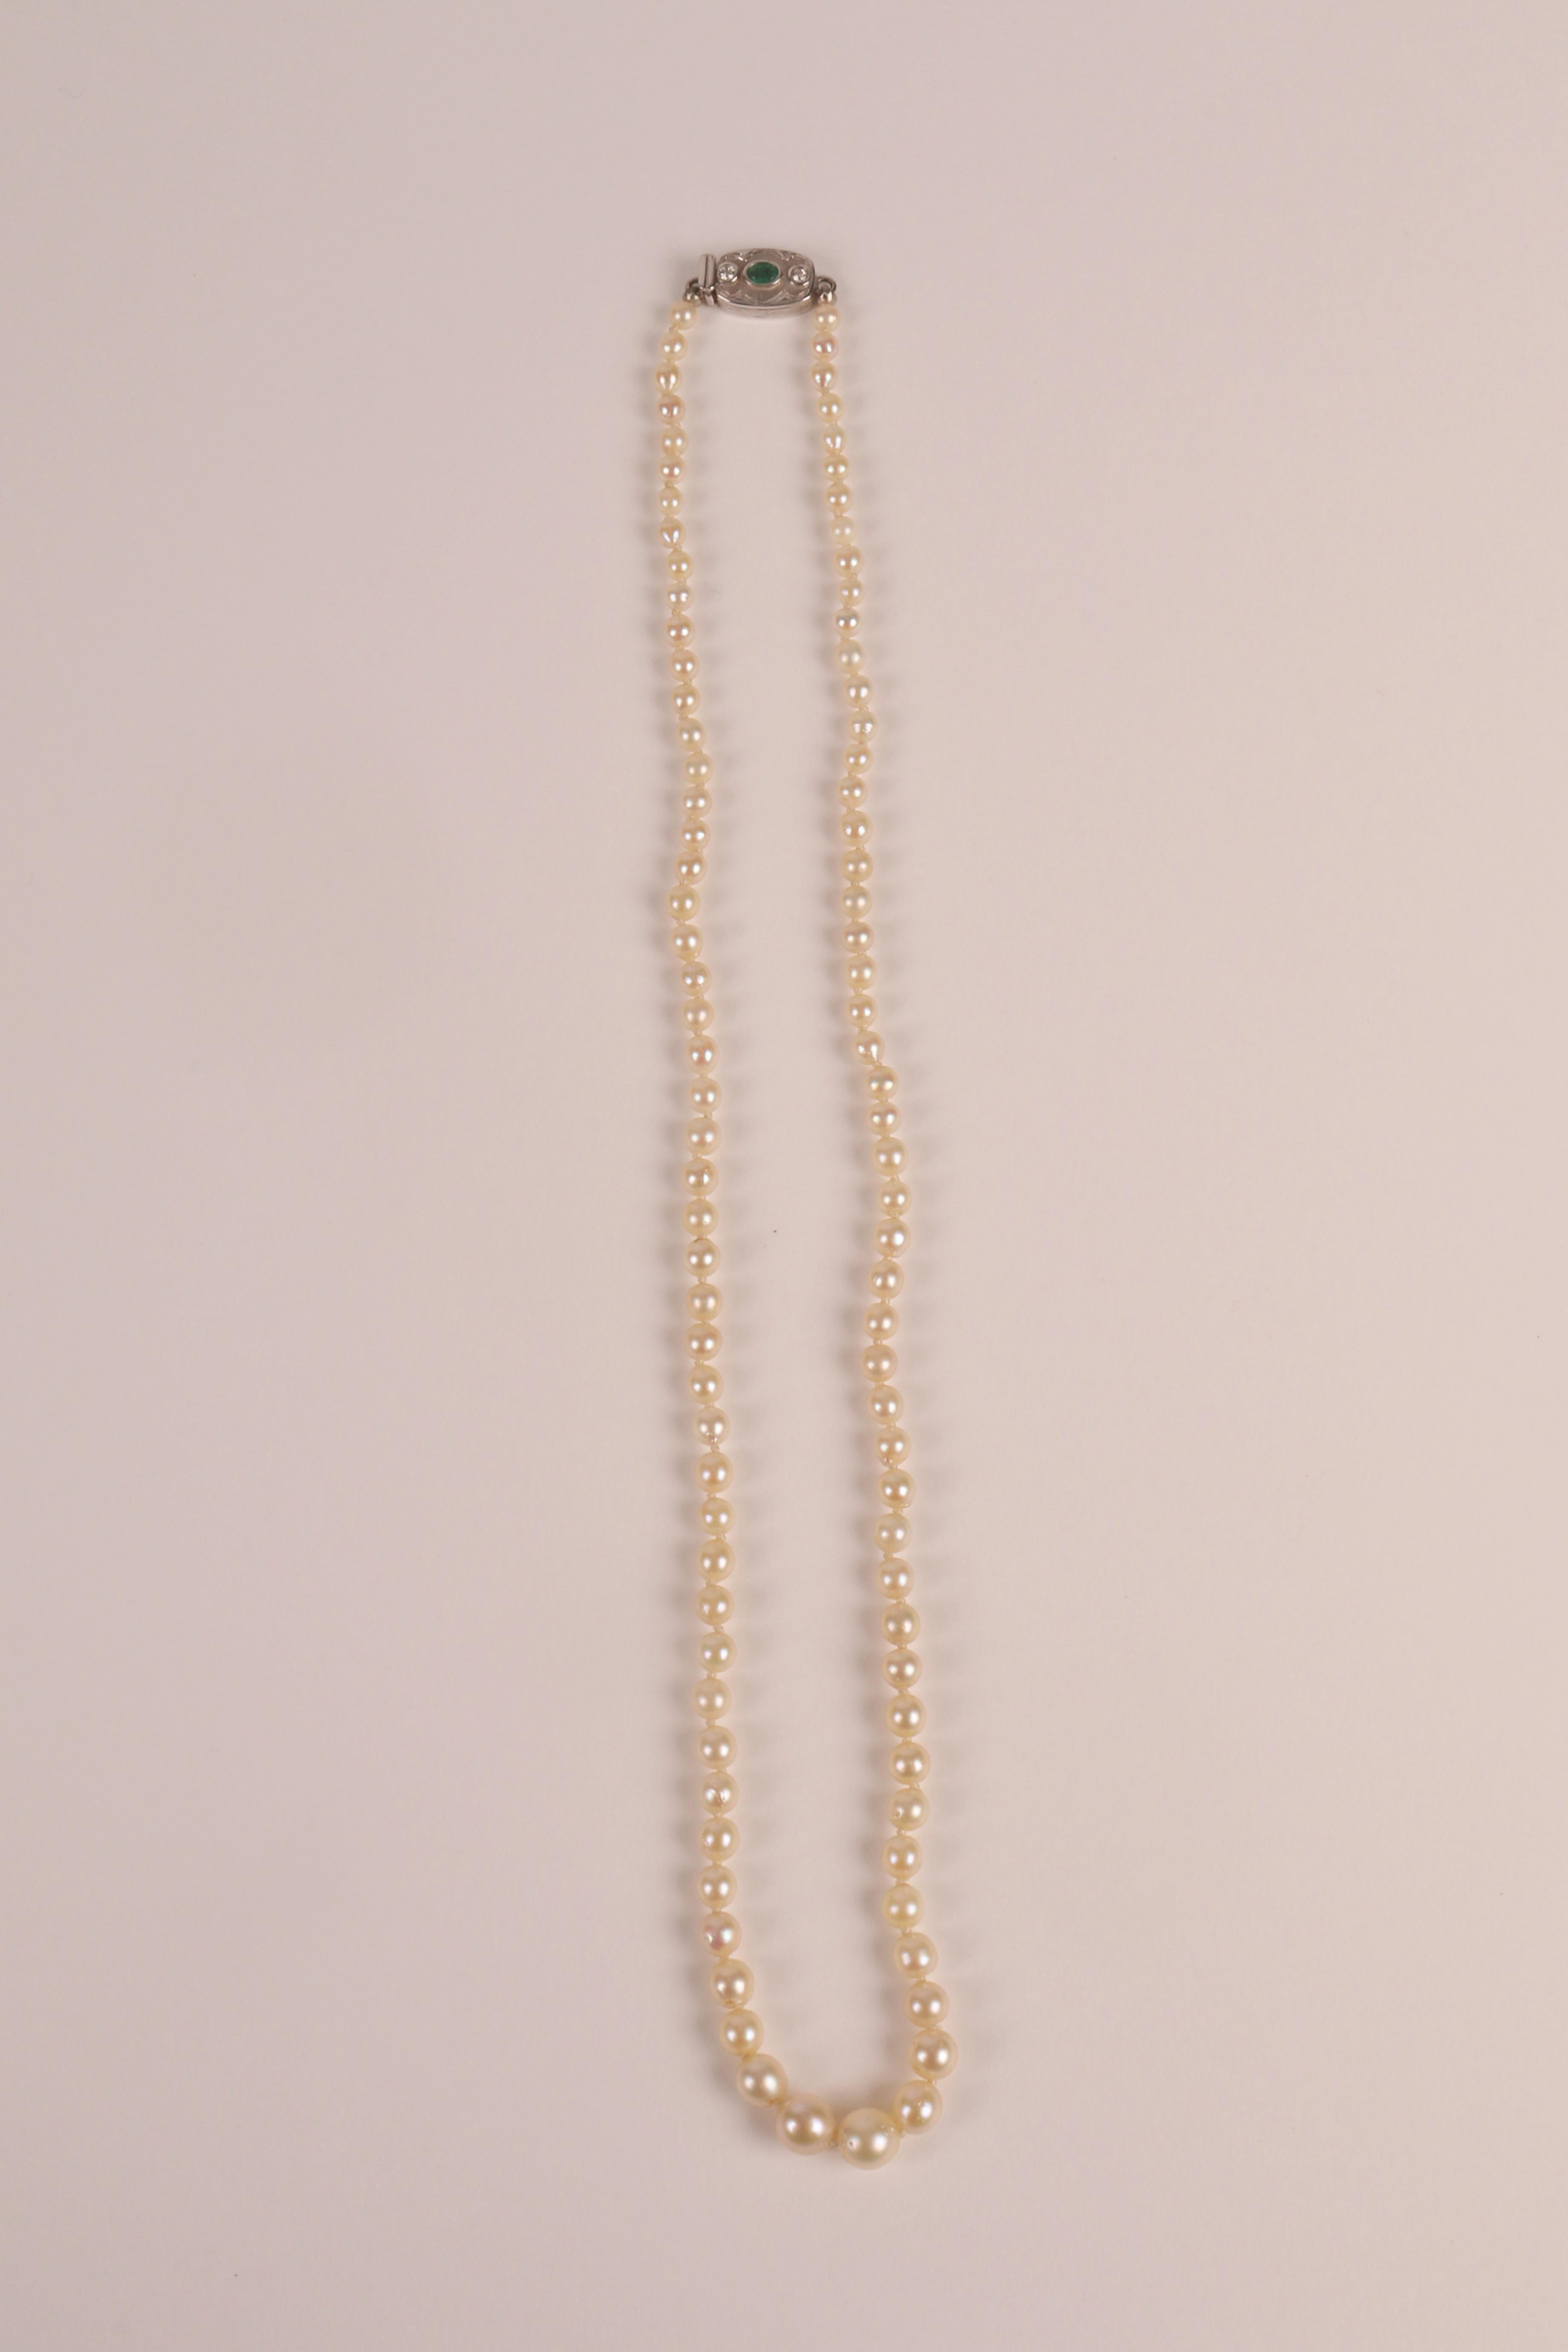 Halskette aus abbaubaren Naturperlen mit Verschluss aus 18 Kt Weißgold, Smaragd und Diamanten.
Die Halskette ist aus natürlichen Perlen mit minimalen Abweichungen in Farbtemperatur und Form gefertigt. Die Schließe ist aus Weißgold mit einem Smaragd